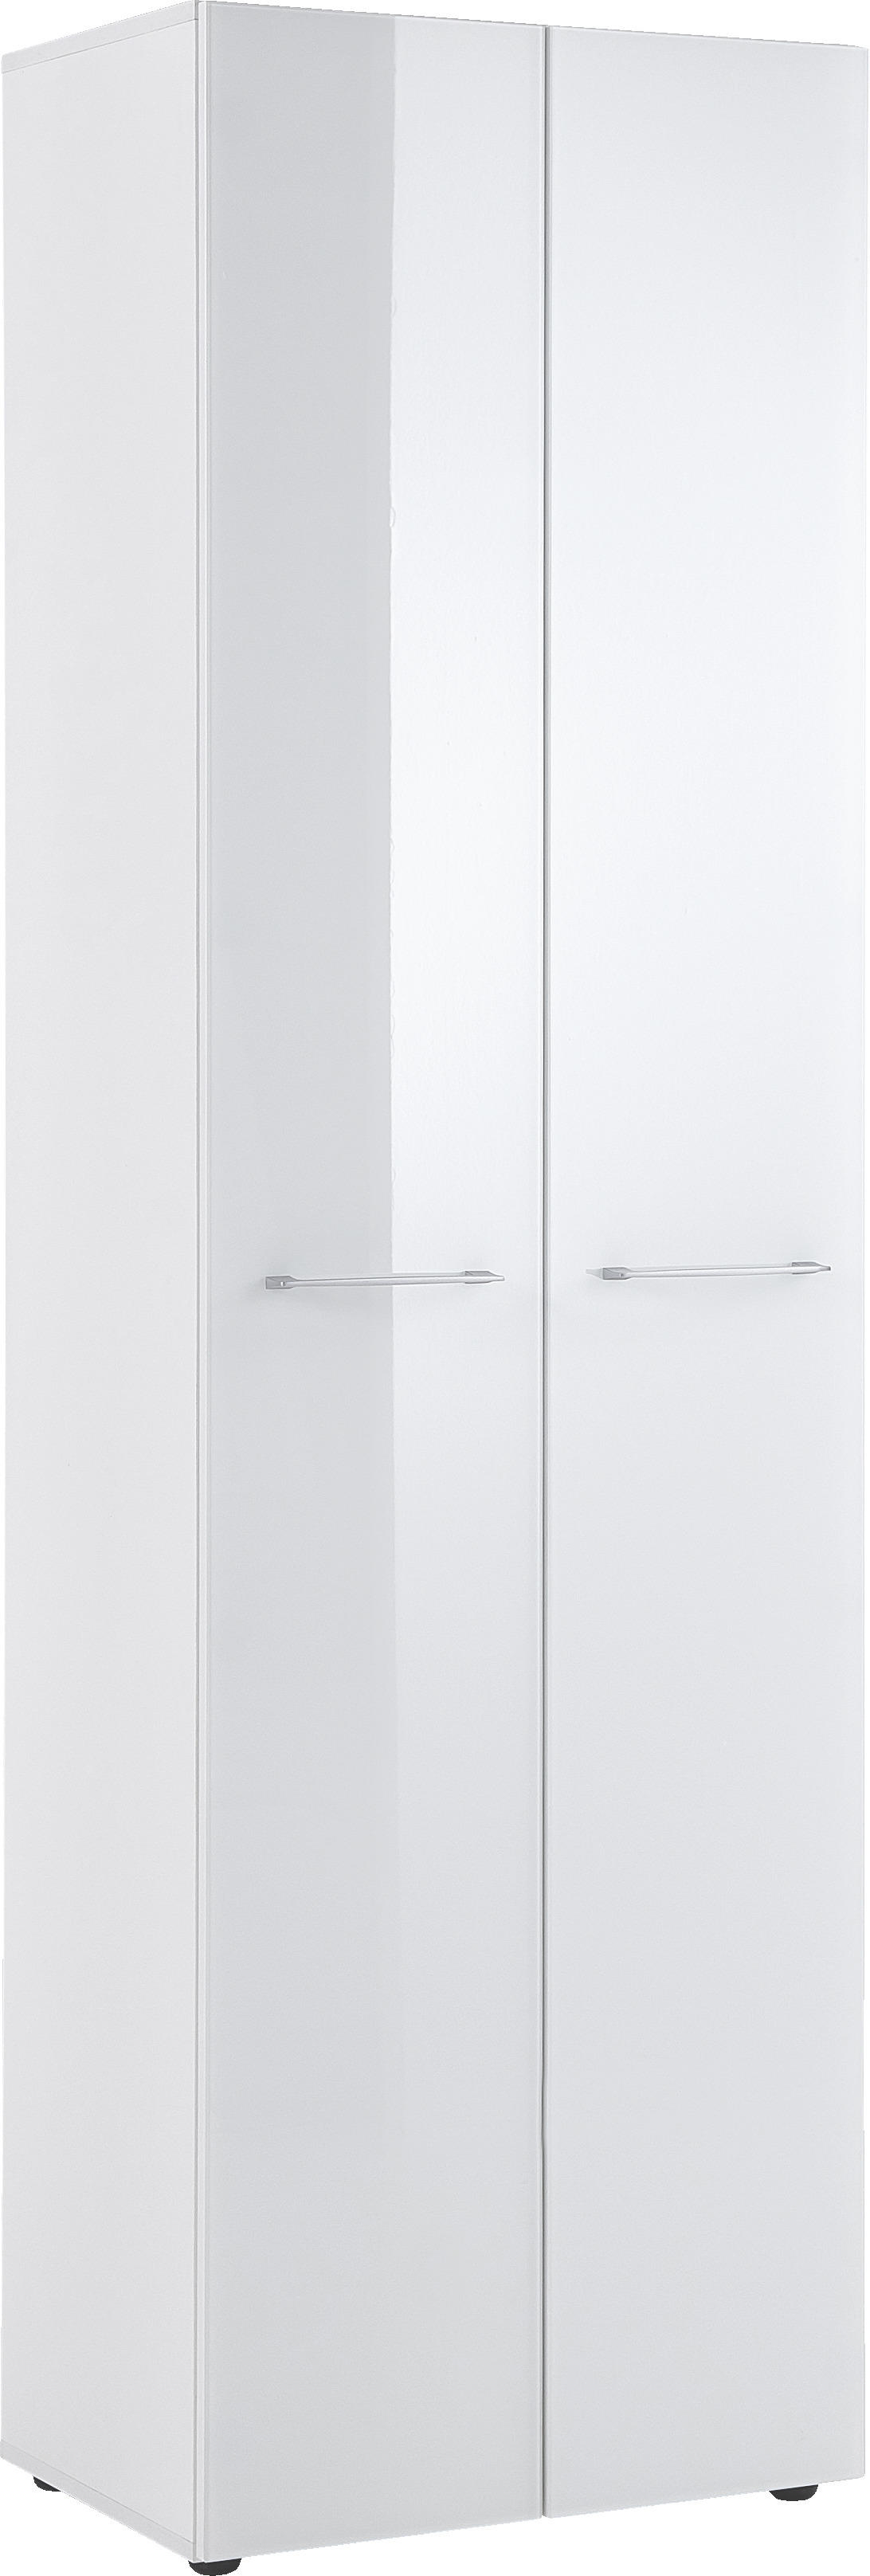 Garderobenschrank in Weiß mit Glas hier ansehen